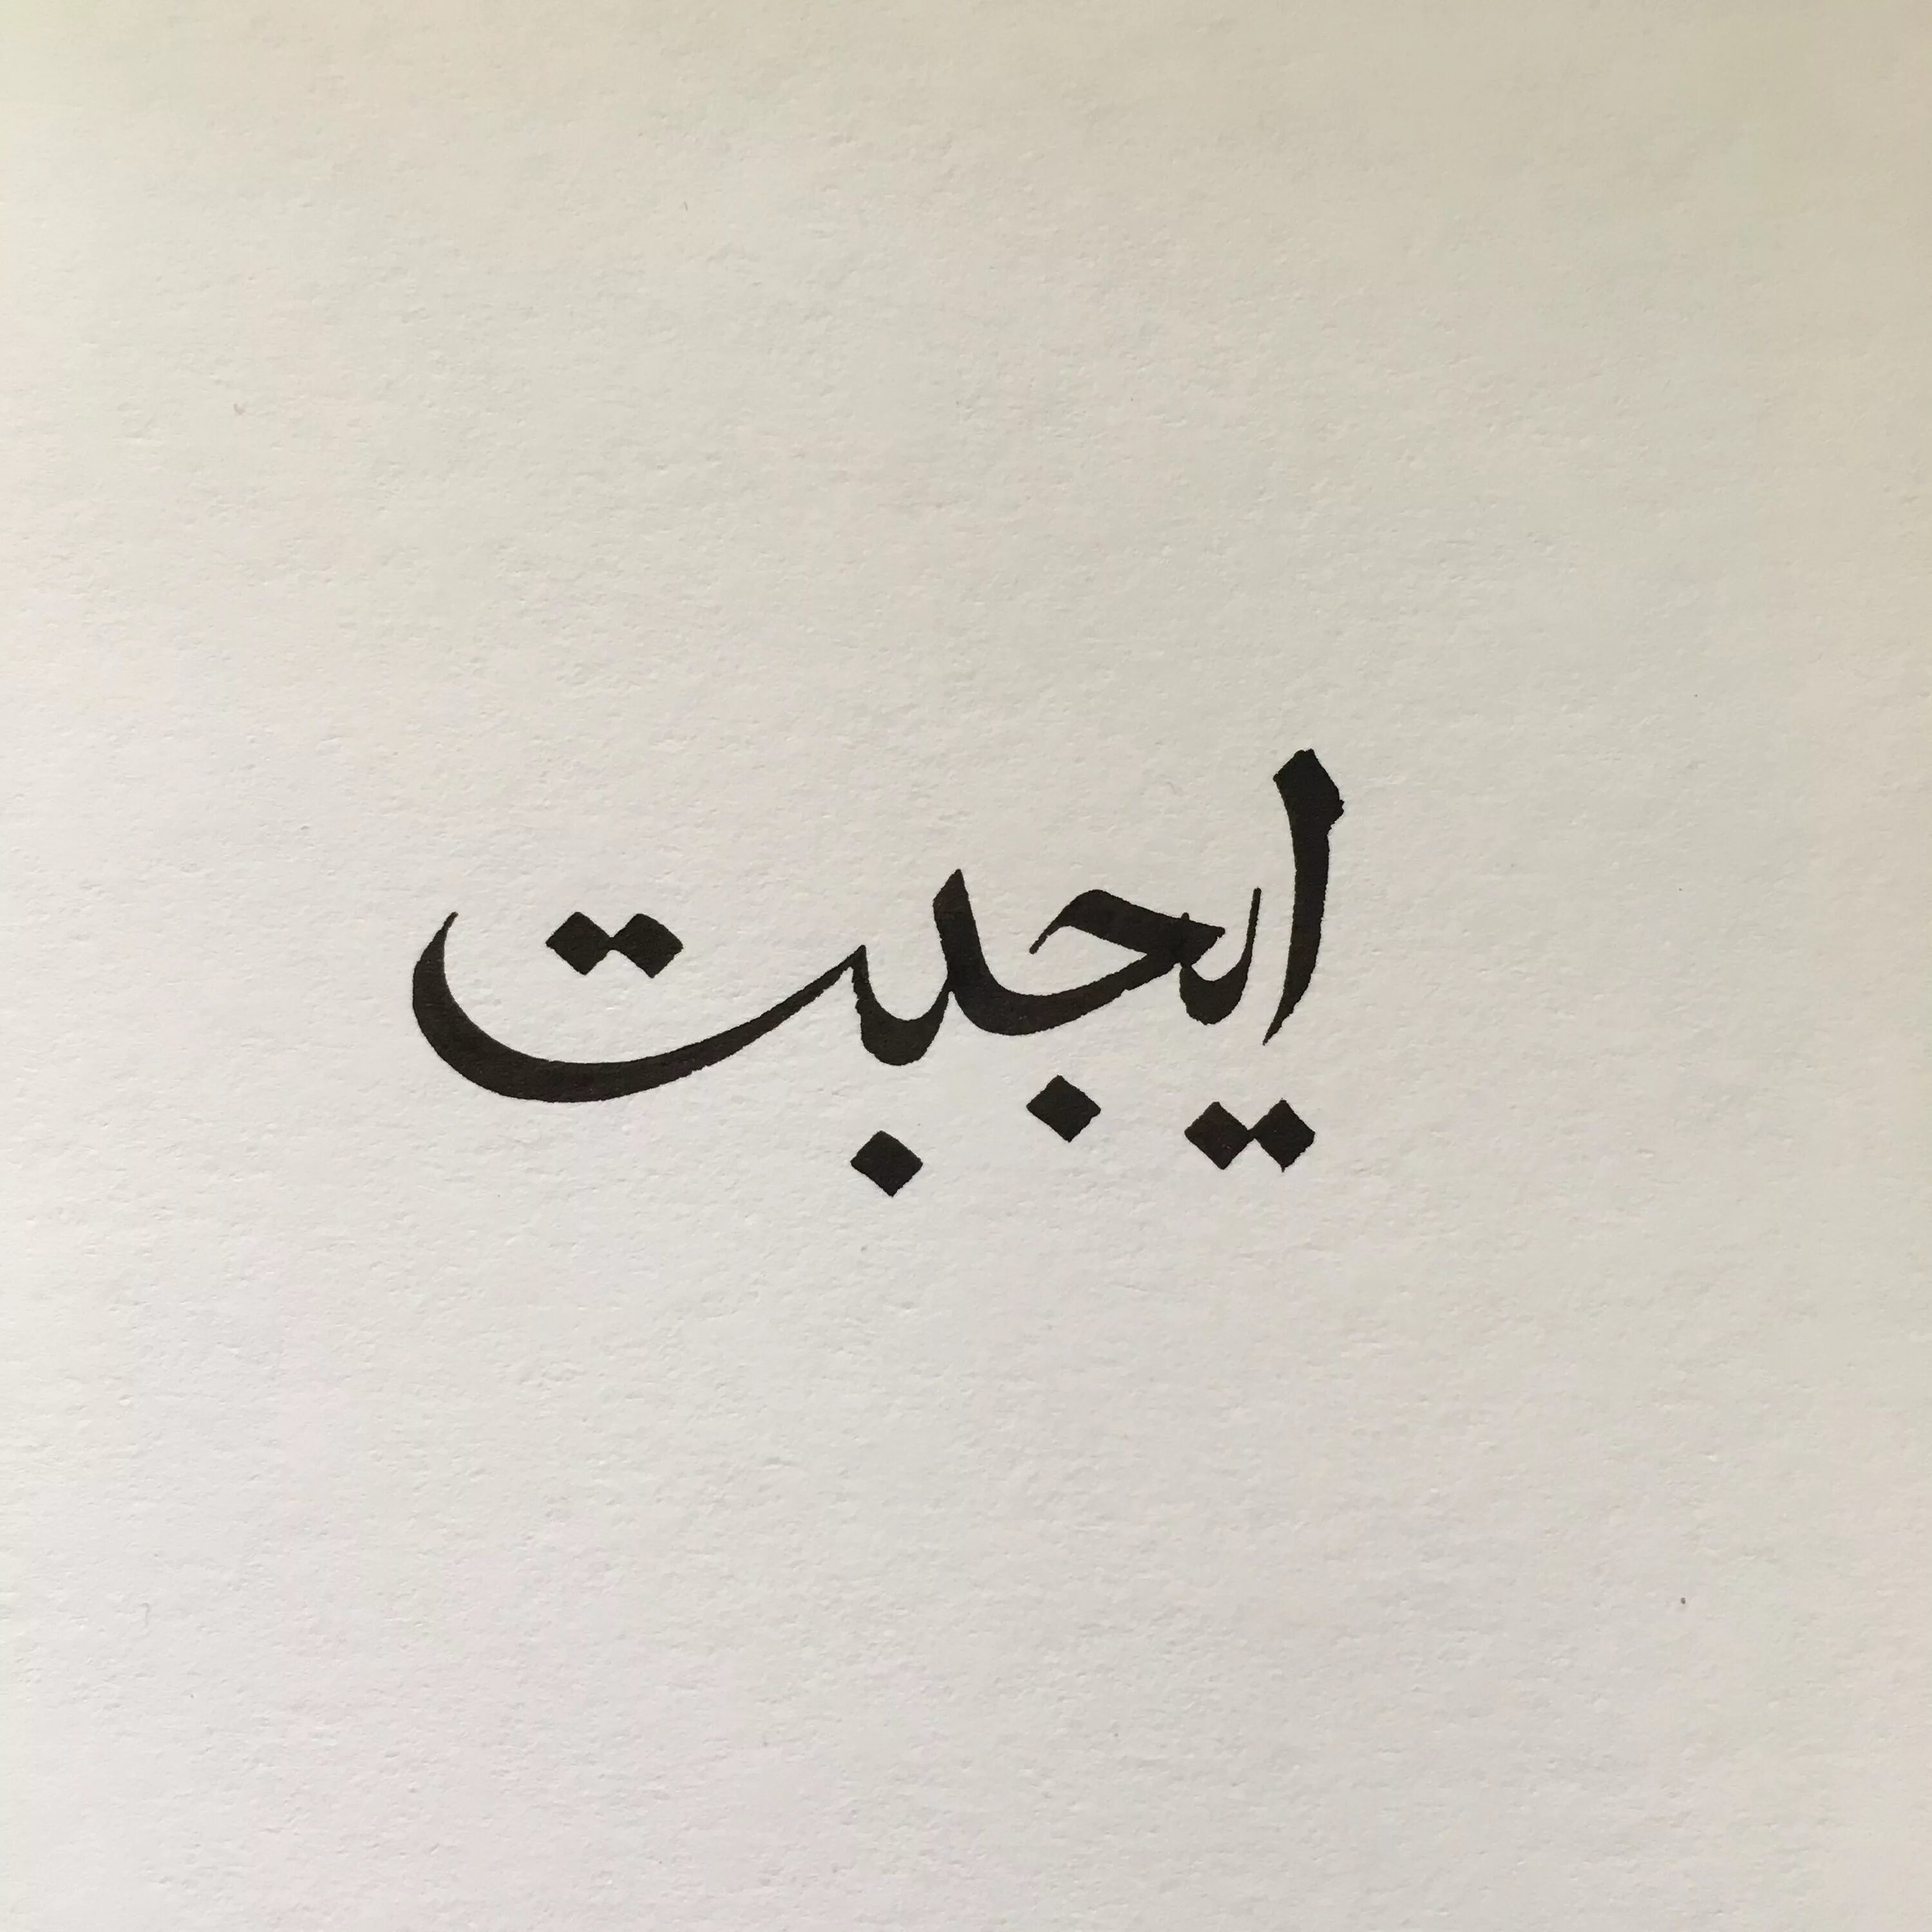 Магазин на арабском. Любовь на арабском. Арабские надписи. Арабские иероглифы. Арабские рисунки.